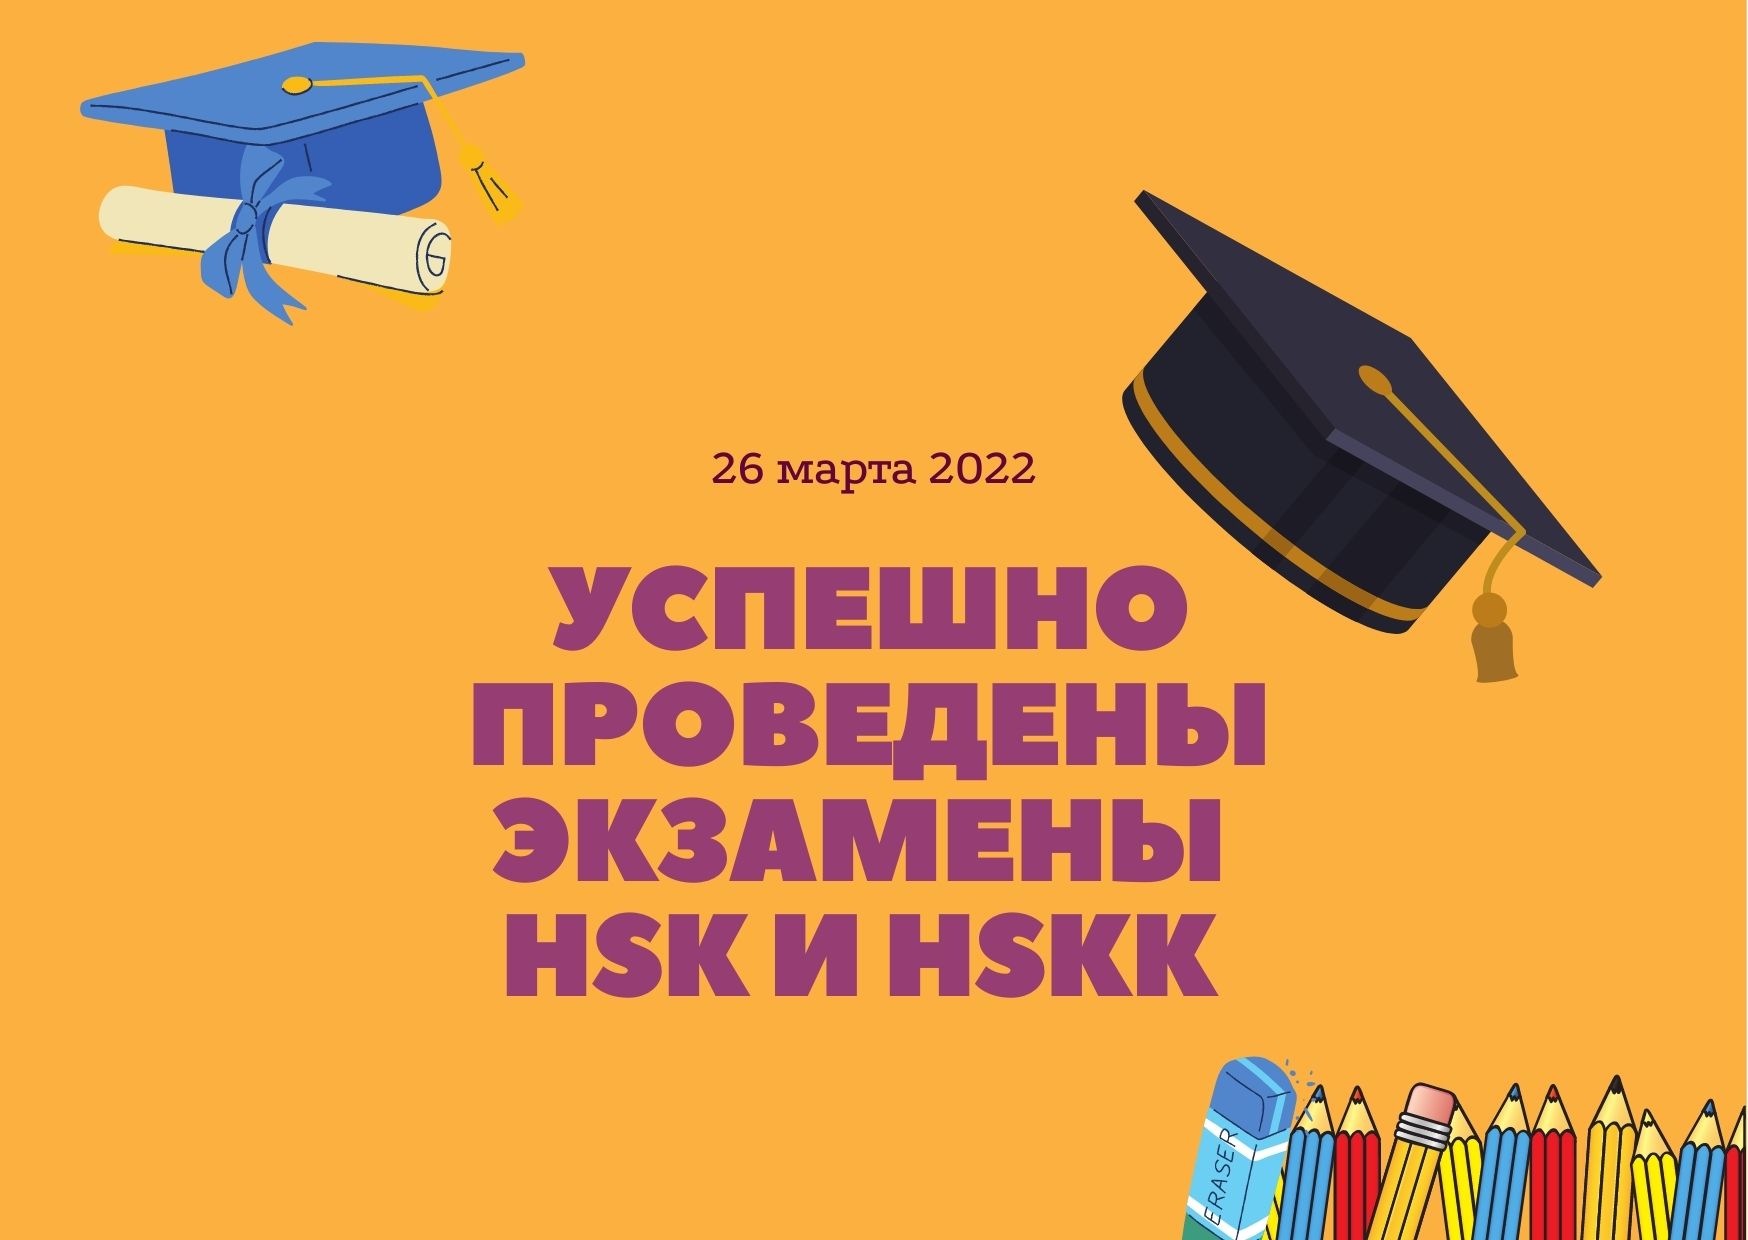 Успешно прошли экзамены HSK и HSKK 26 марта 2022 года